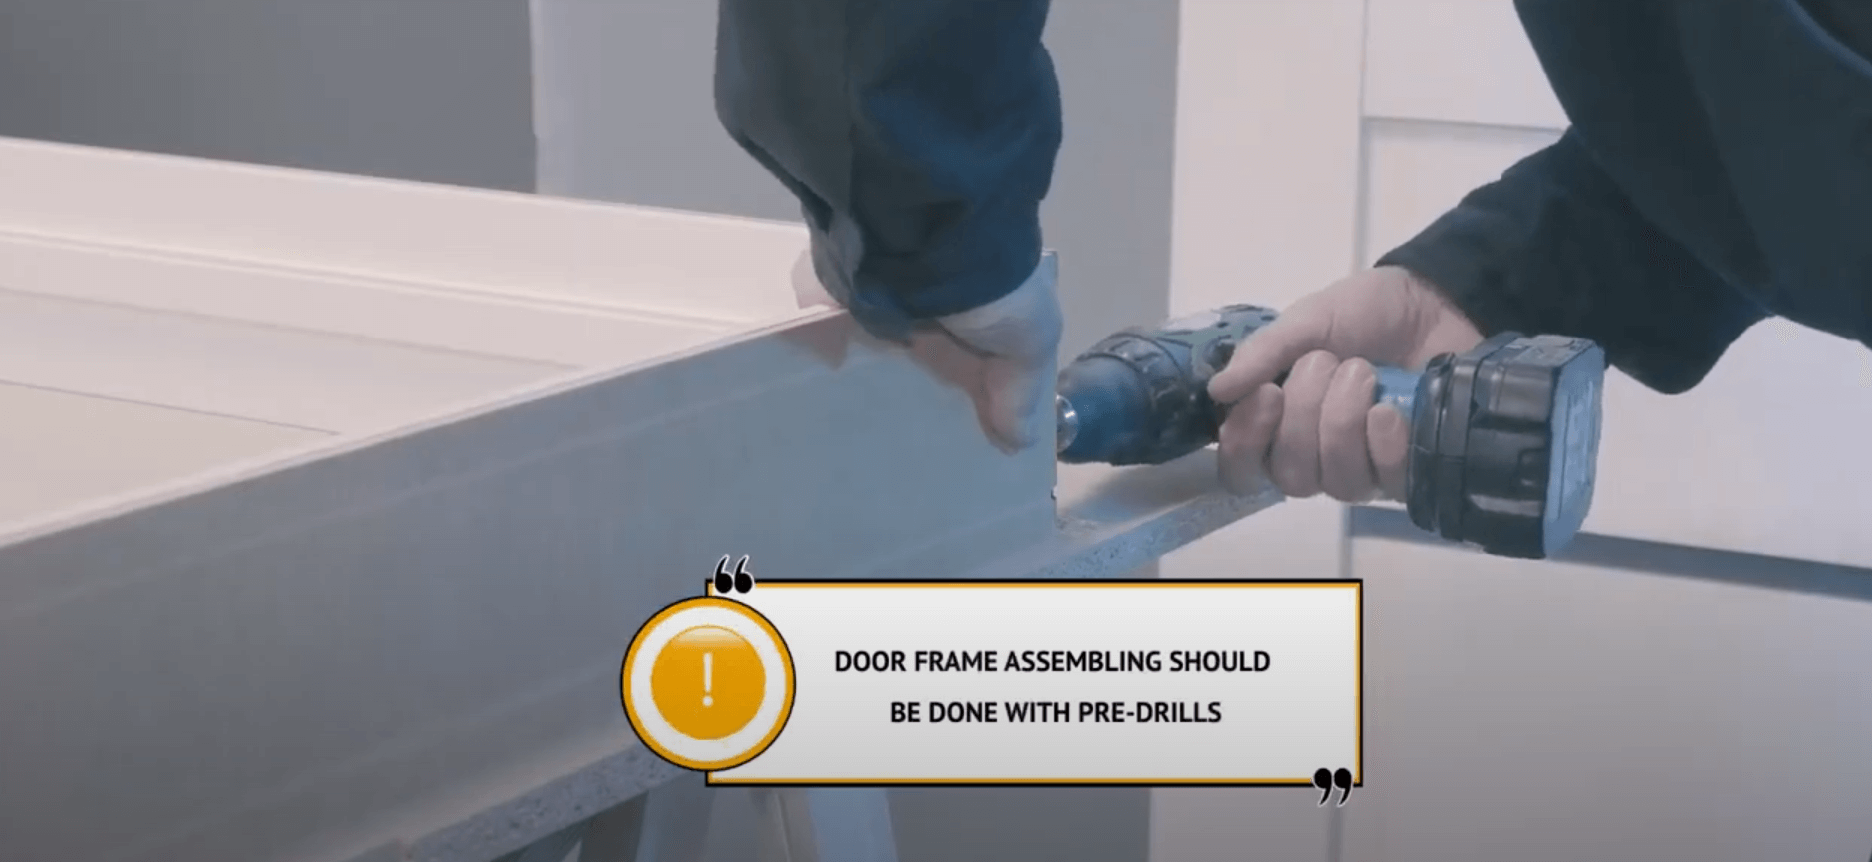 door frame assembling